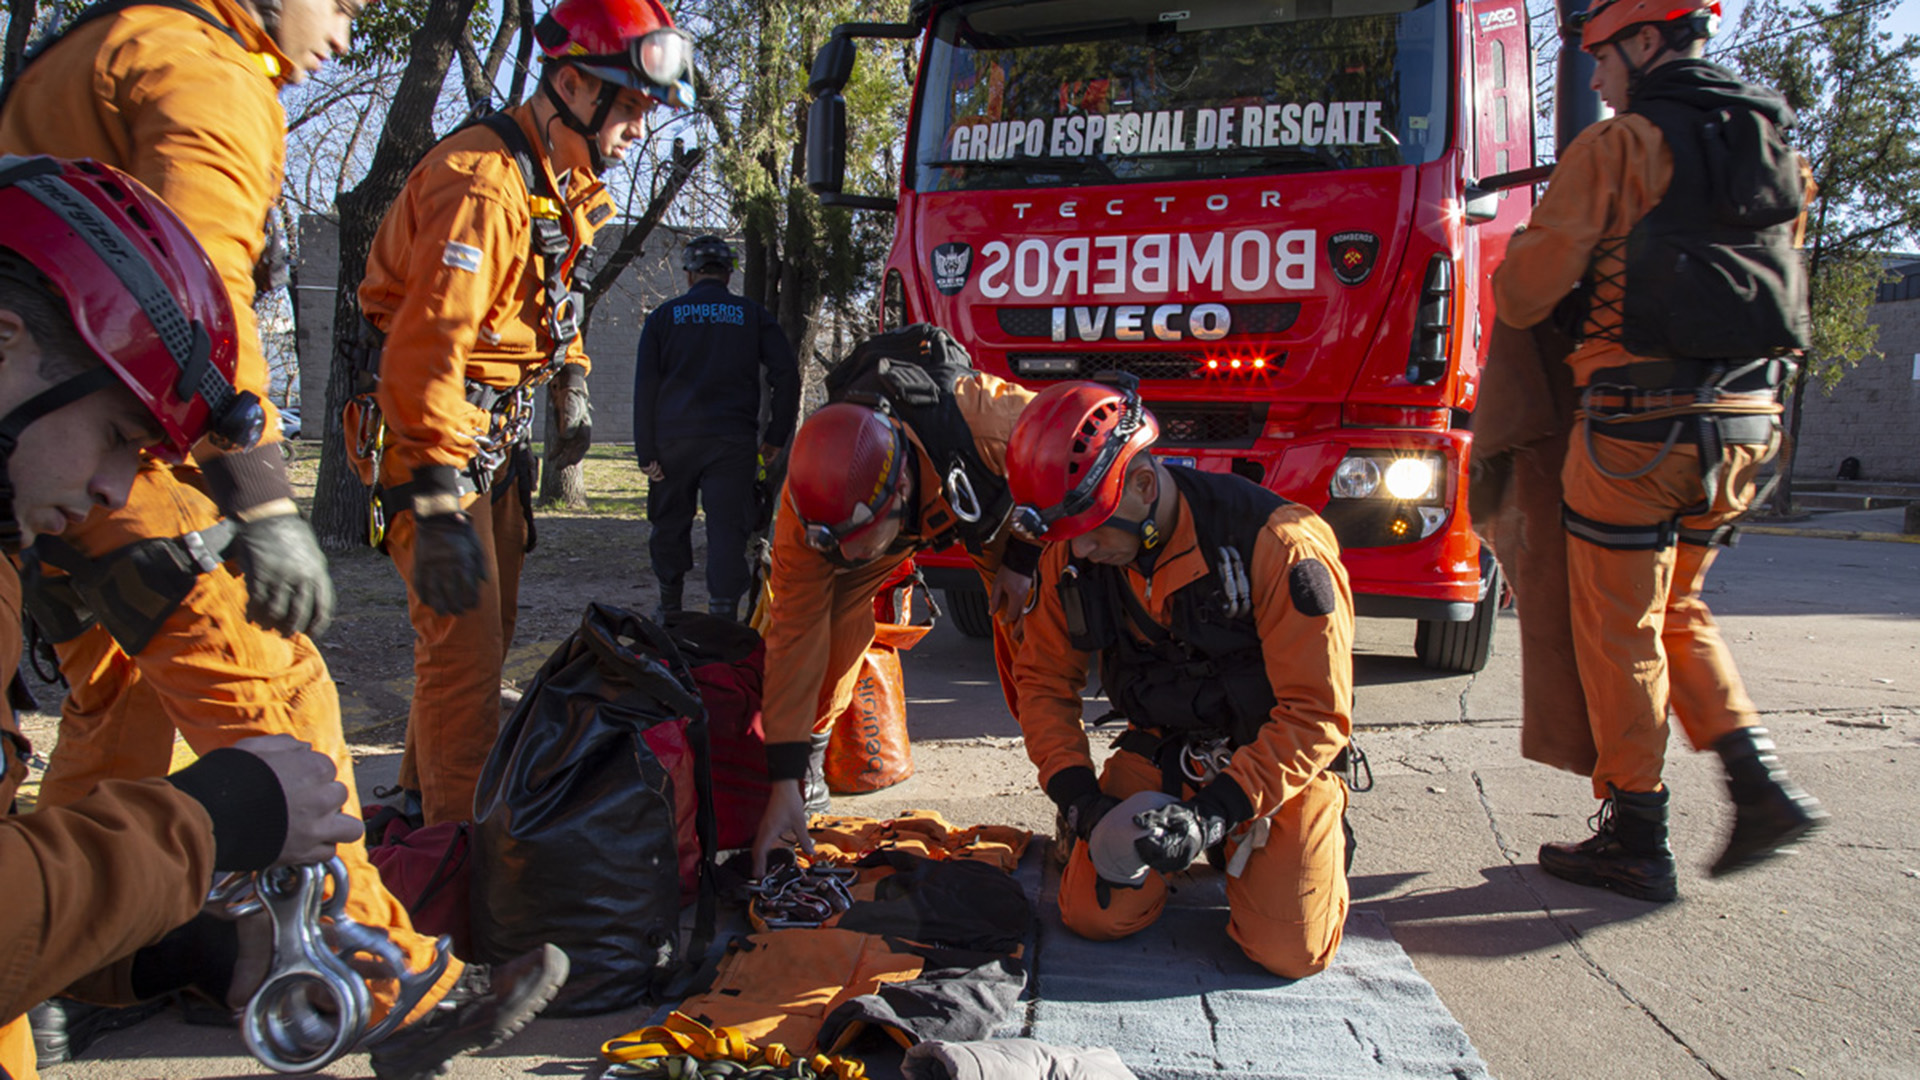 Cómo actúa el Grupo Especial de Rescate, los bomberos que entran en acción  en situaciones límite - Infobae